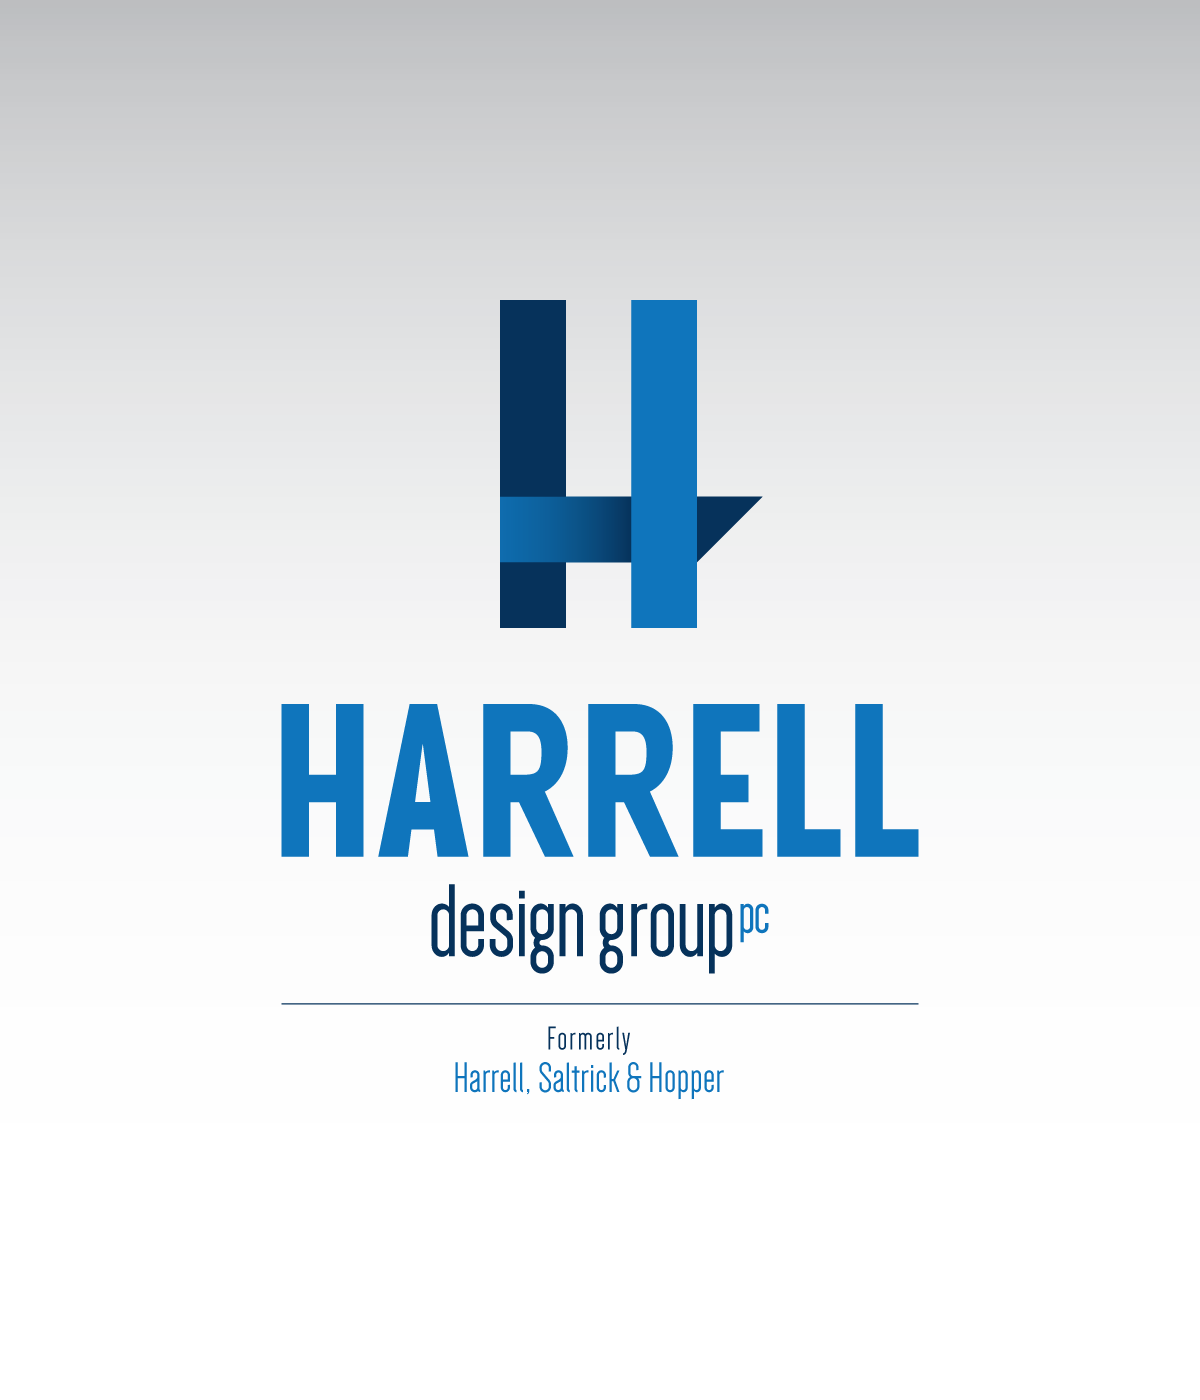 Harrell Design Group Logo on White